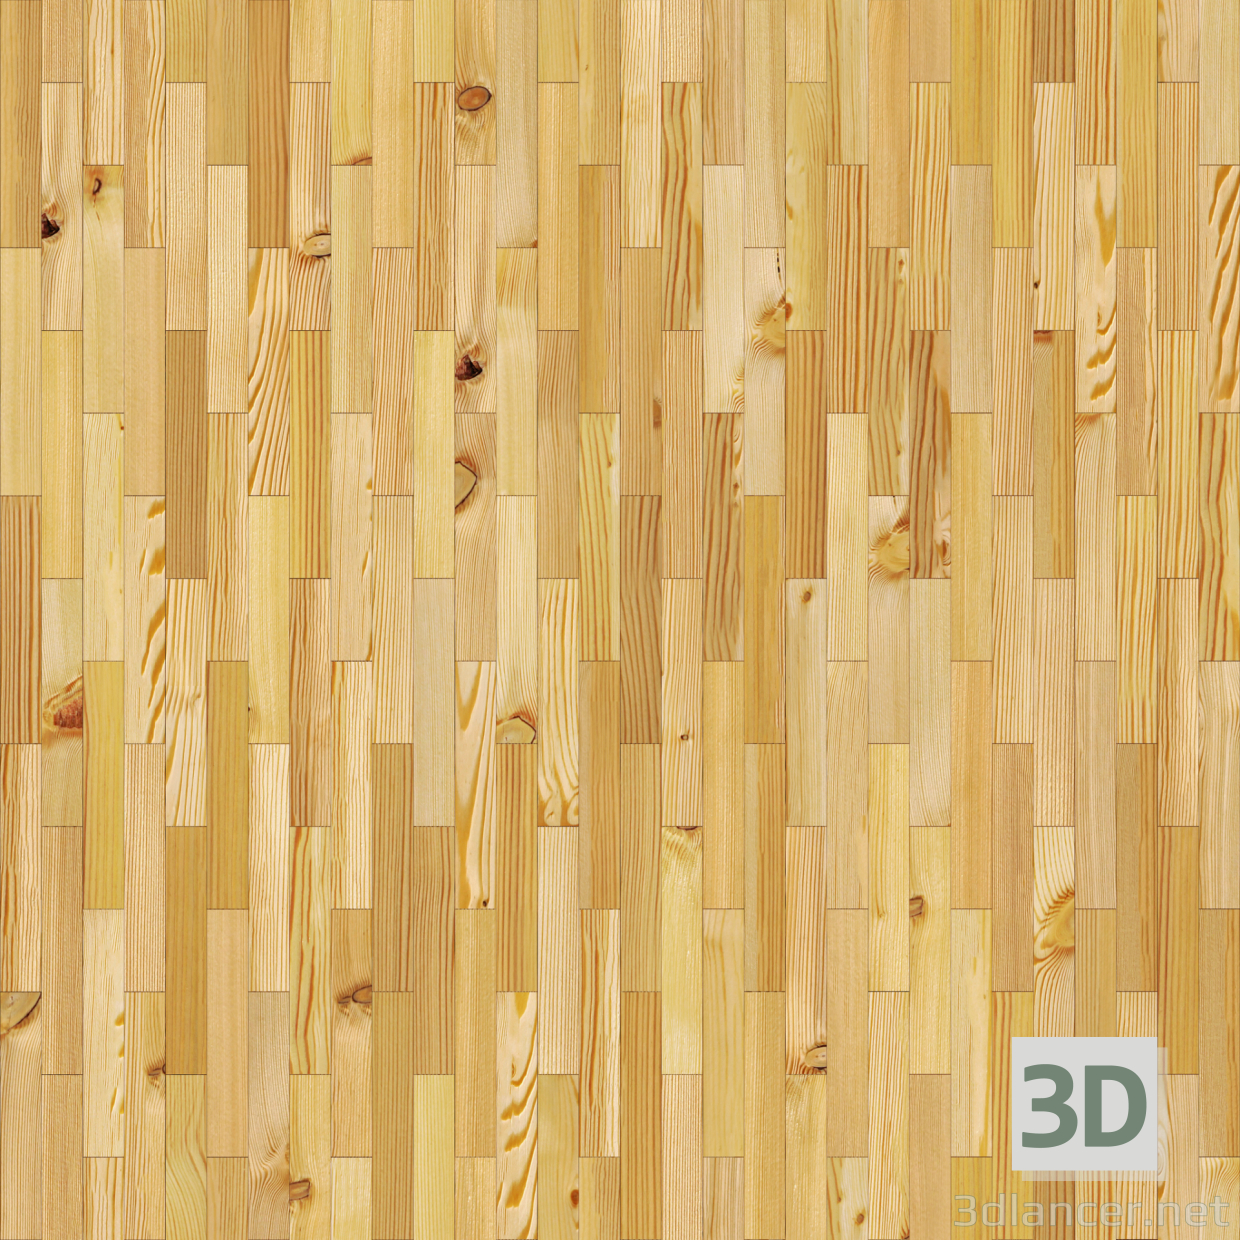 बनावट निर्बाध बनावट - क्लासिक टुकड़ा लकड़ी की छत मुफ्त डाउनलोड - छवि